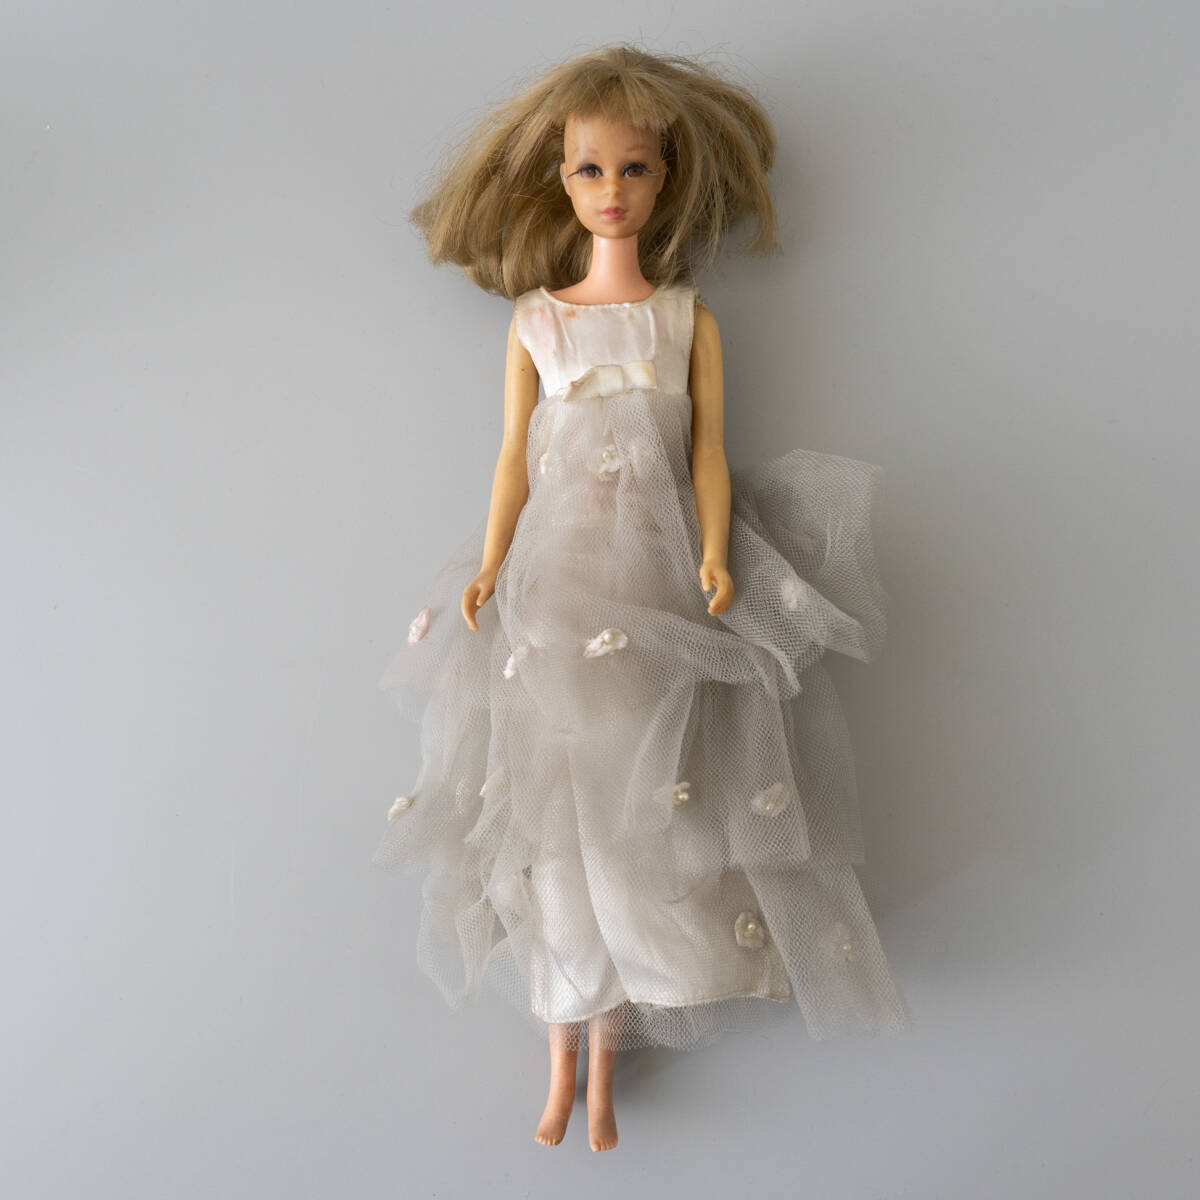 フランシー ? FRANCIE ? 1965年 MATTEL マテル社 服小物 他 セット ビンテージ バービー人形 フィギュア ドール 人形の画像3